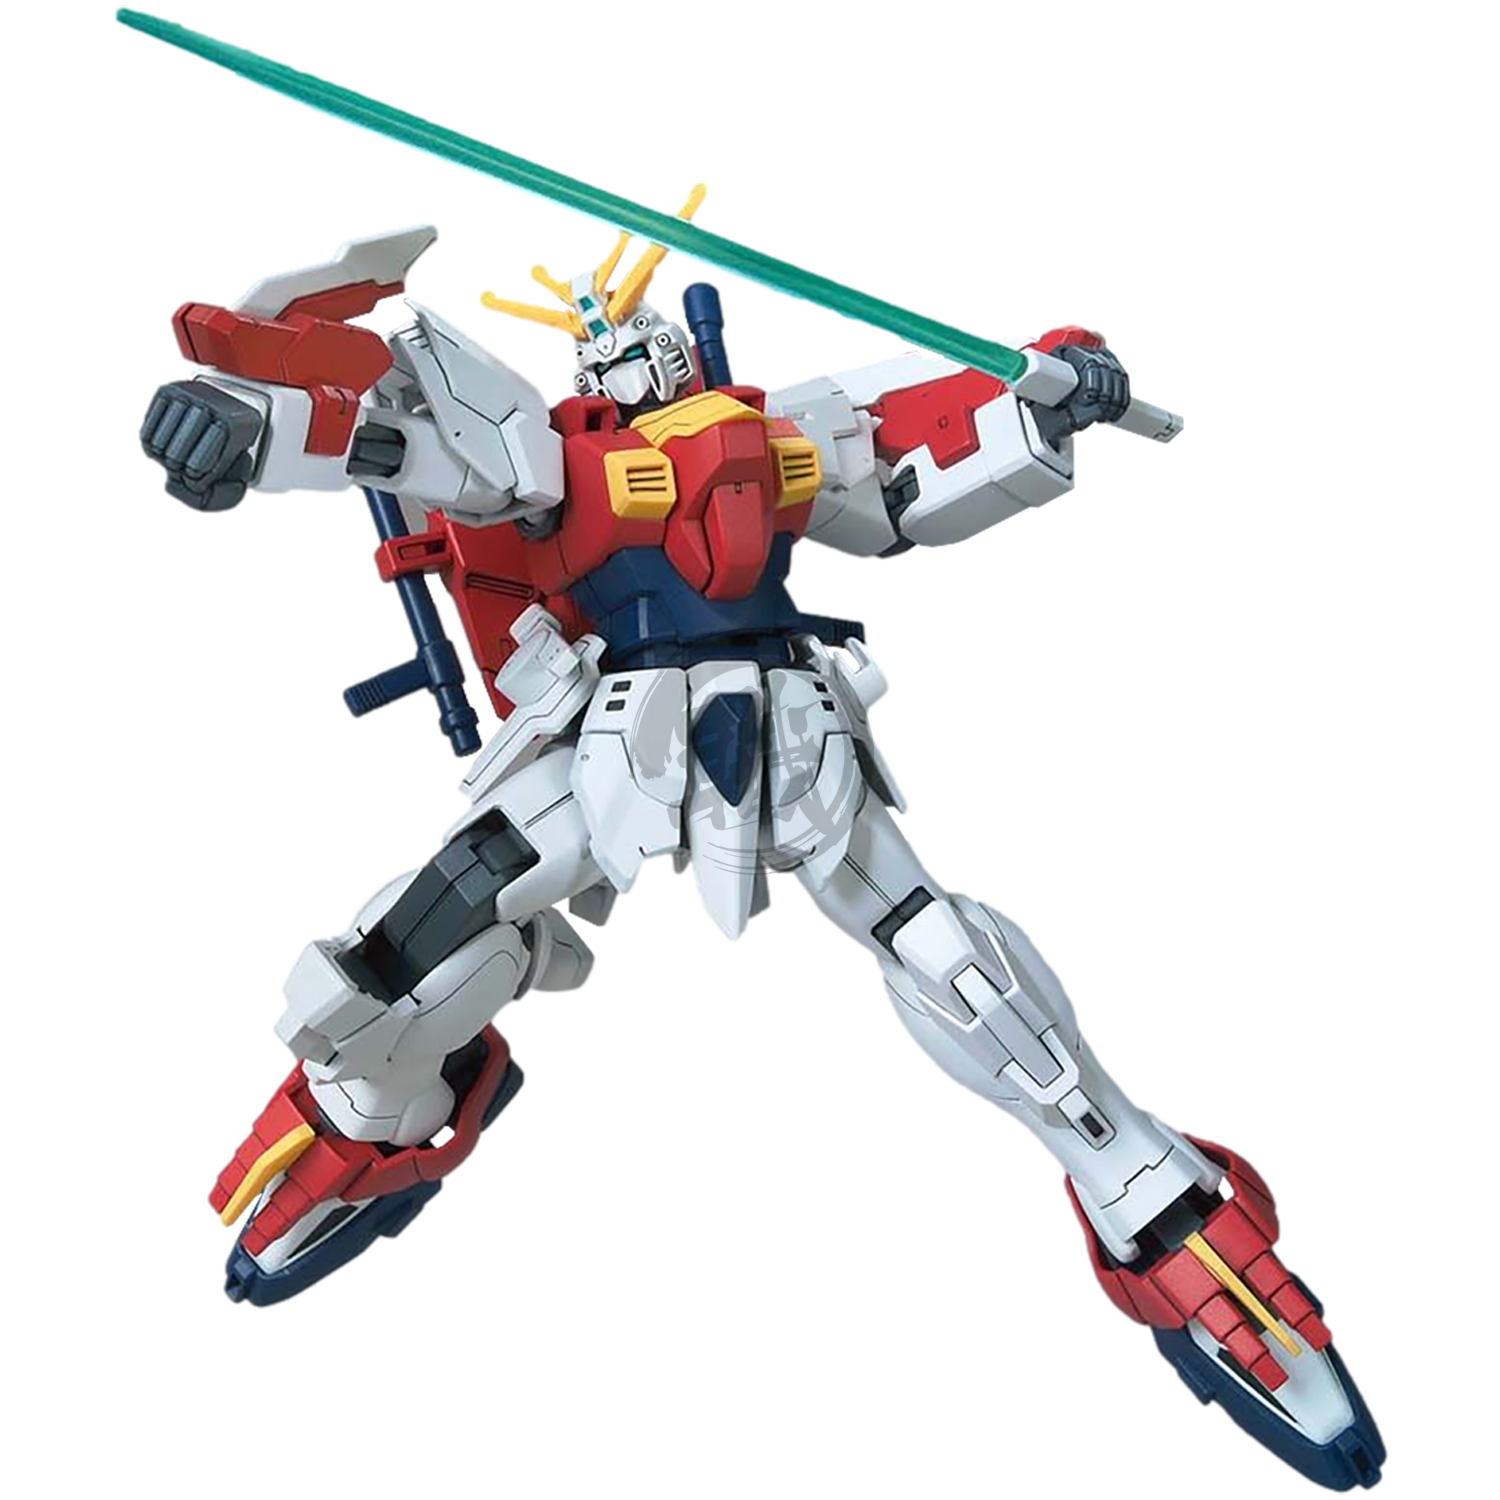 HG Blazing Gundam - ShokuninGunpla